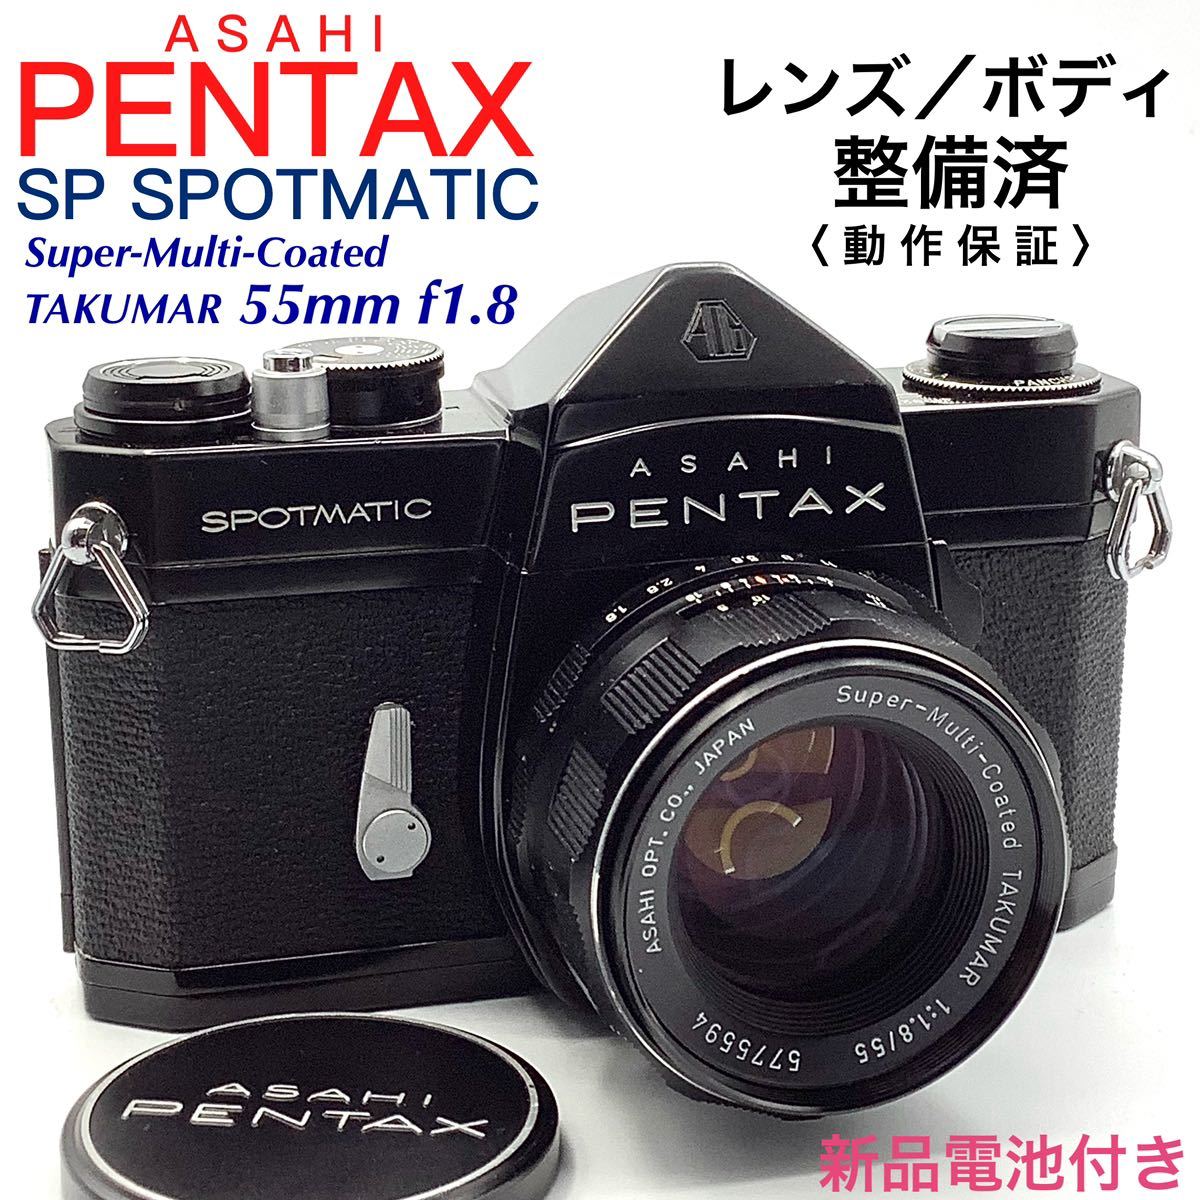 【 整備済・動作保証 】PENTAX アサヒペンタックス SP SPOTMATIC ブラックペイント ／ Super-Multi-Coated TAKUMAR 55mm f1.8